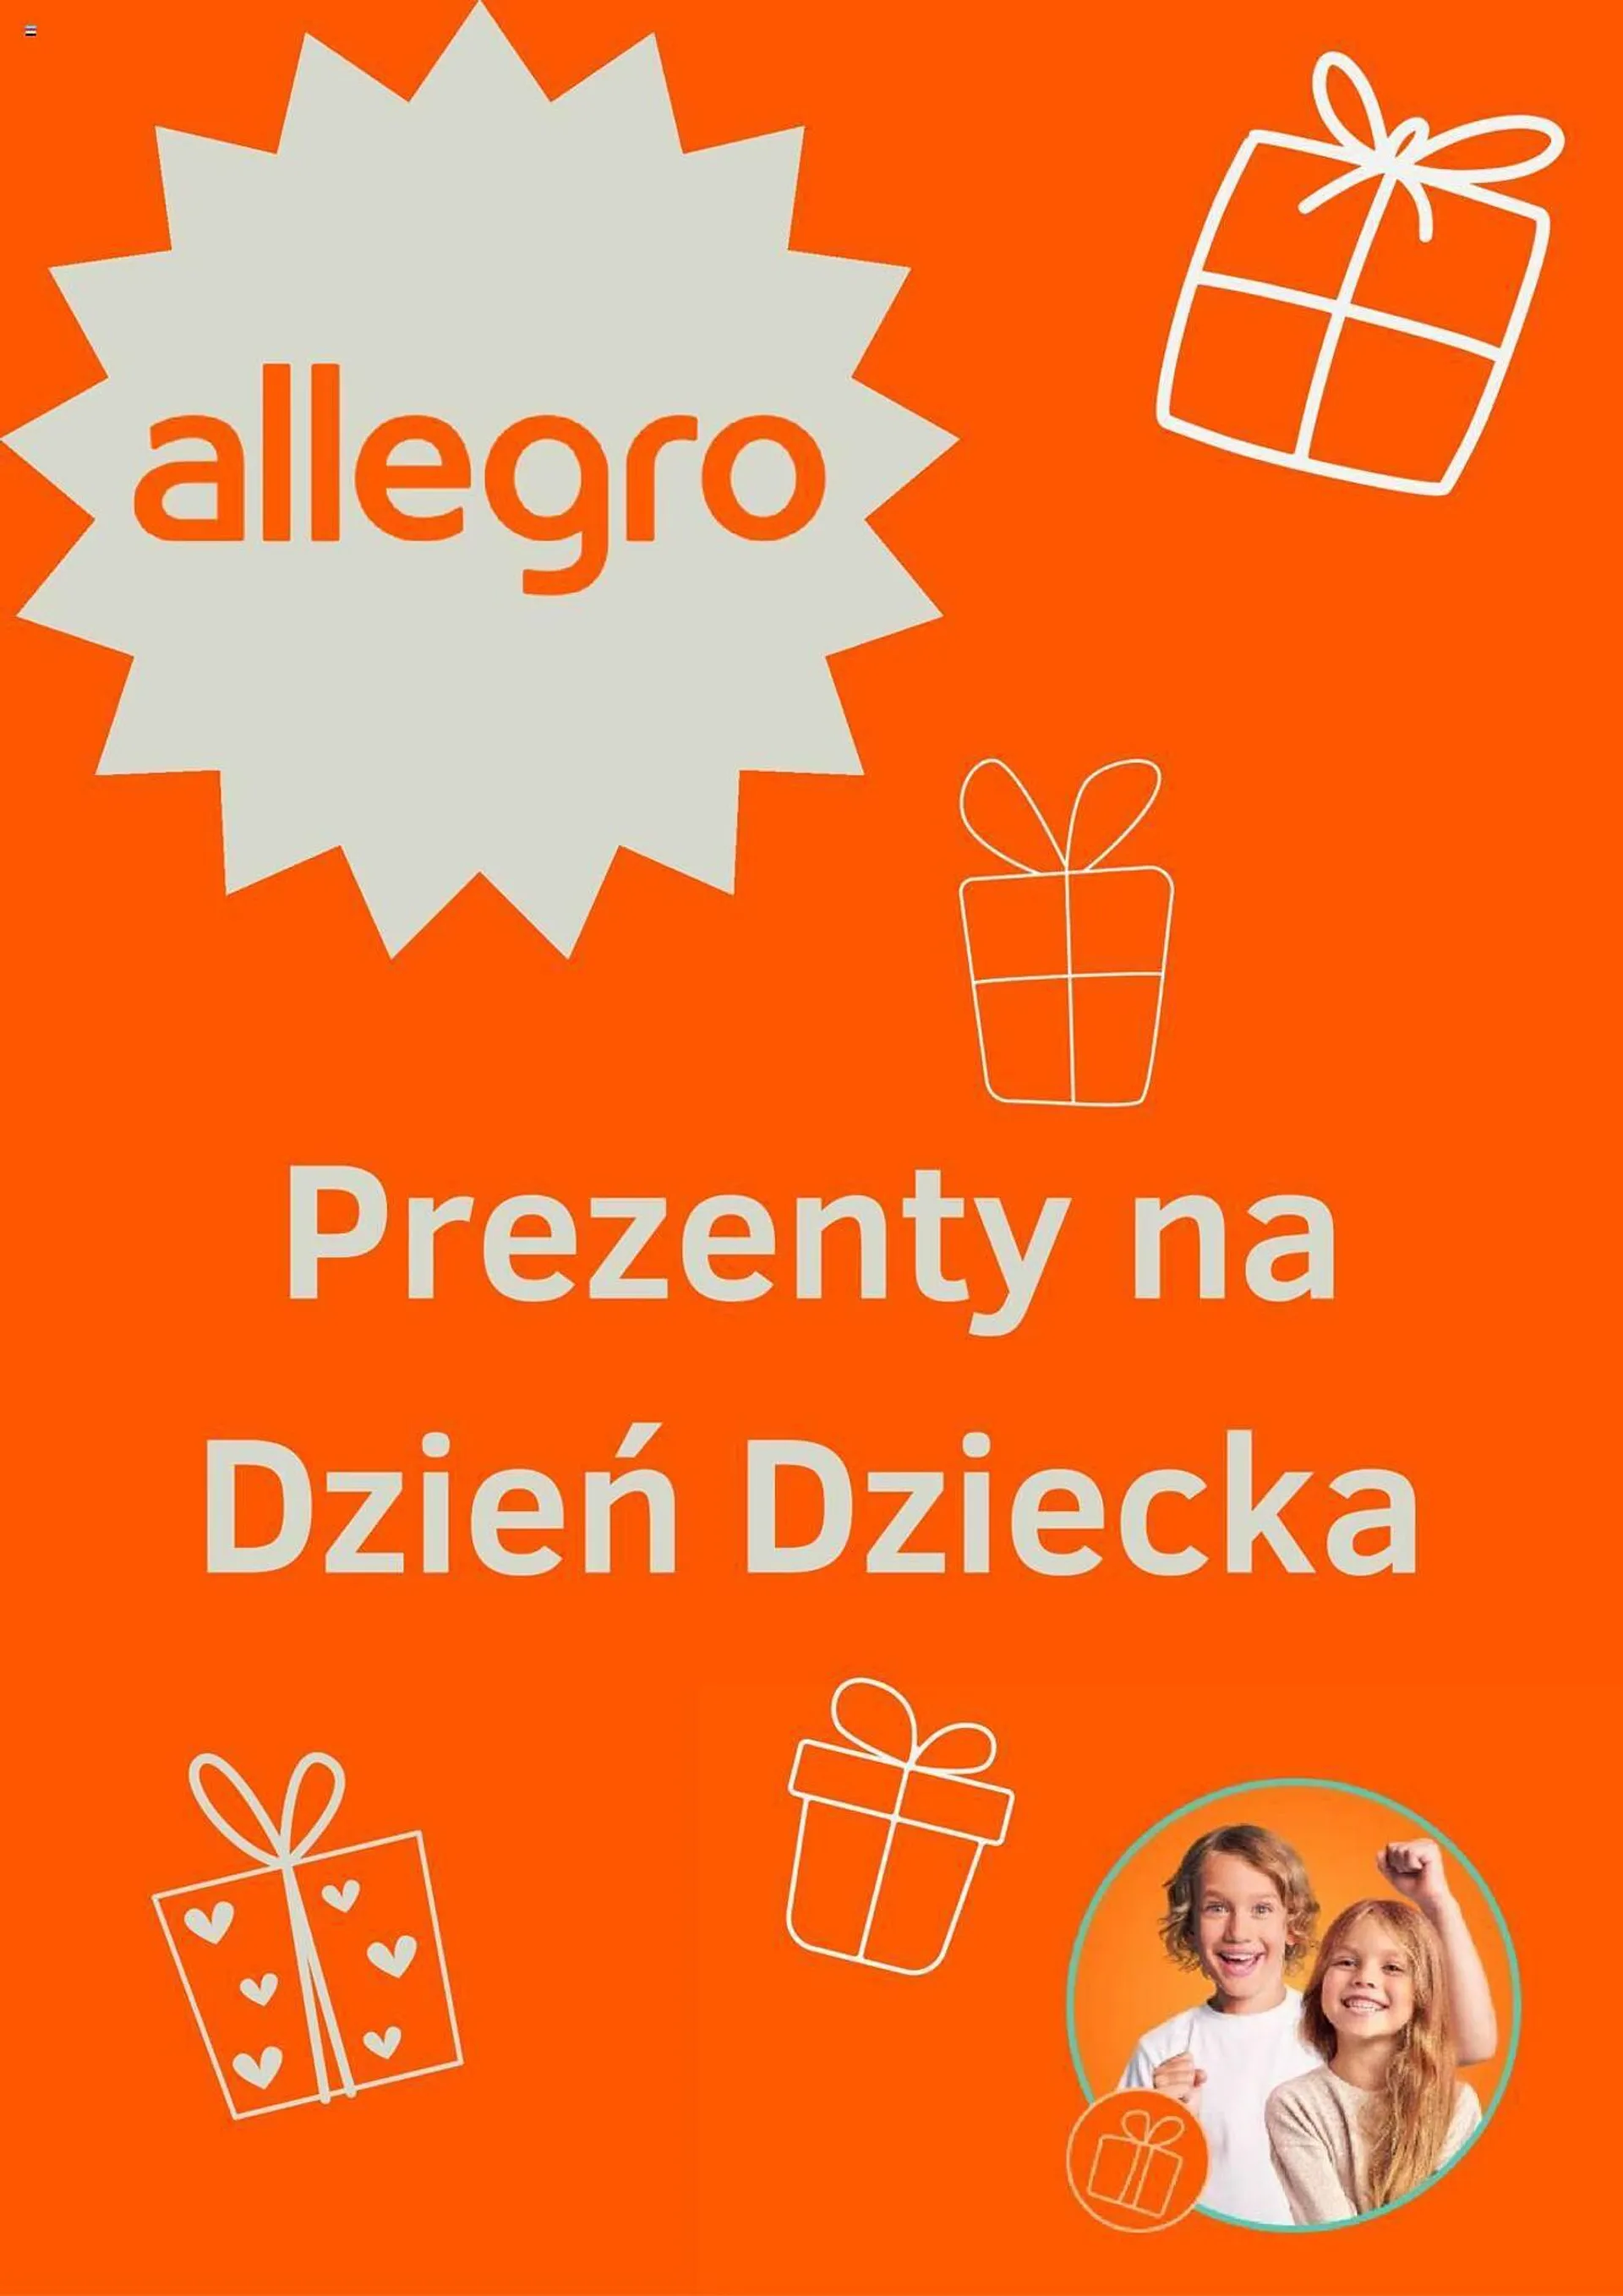 Allegro gazetka - 1